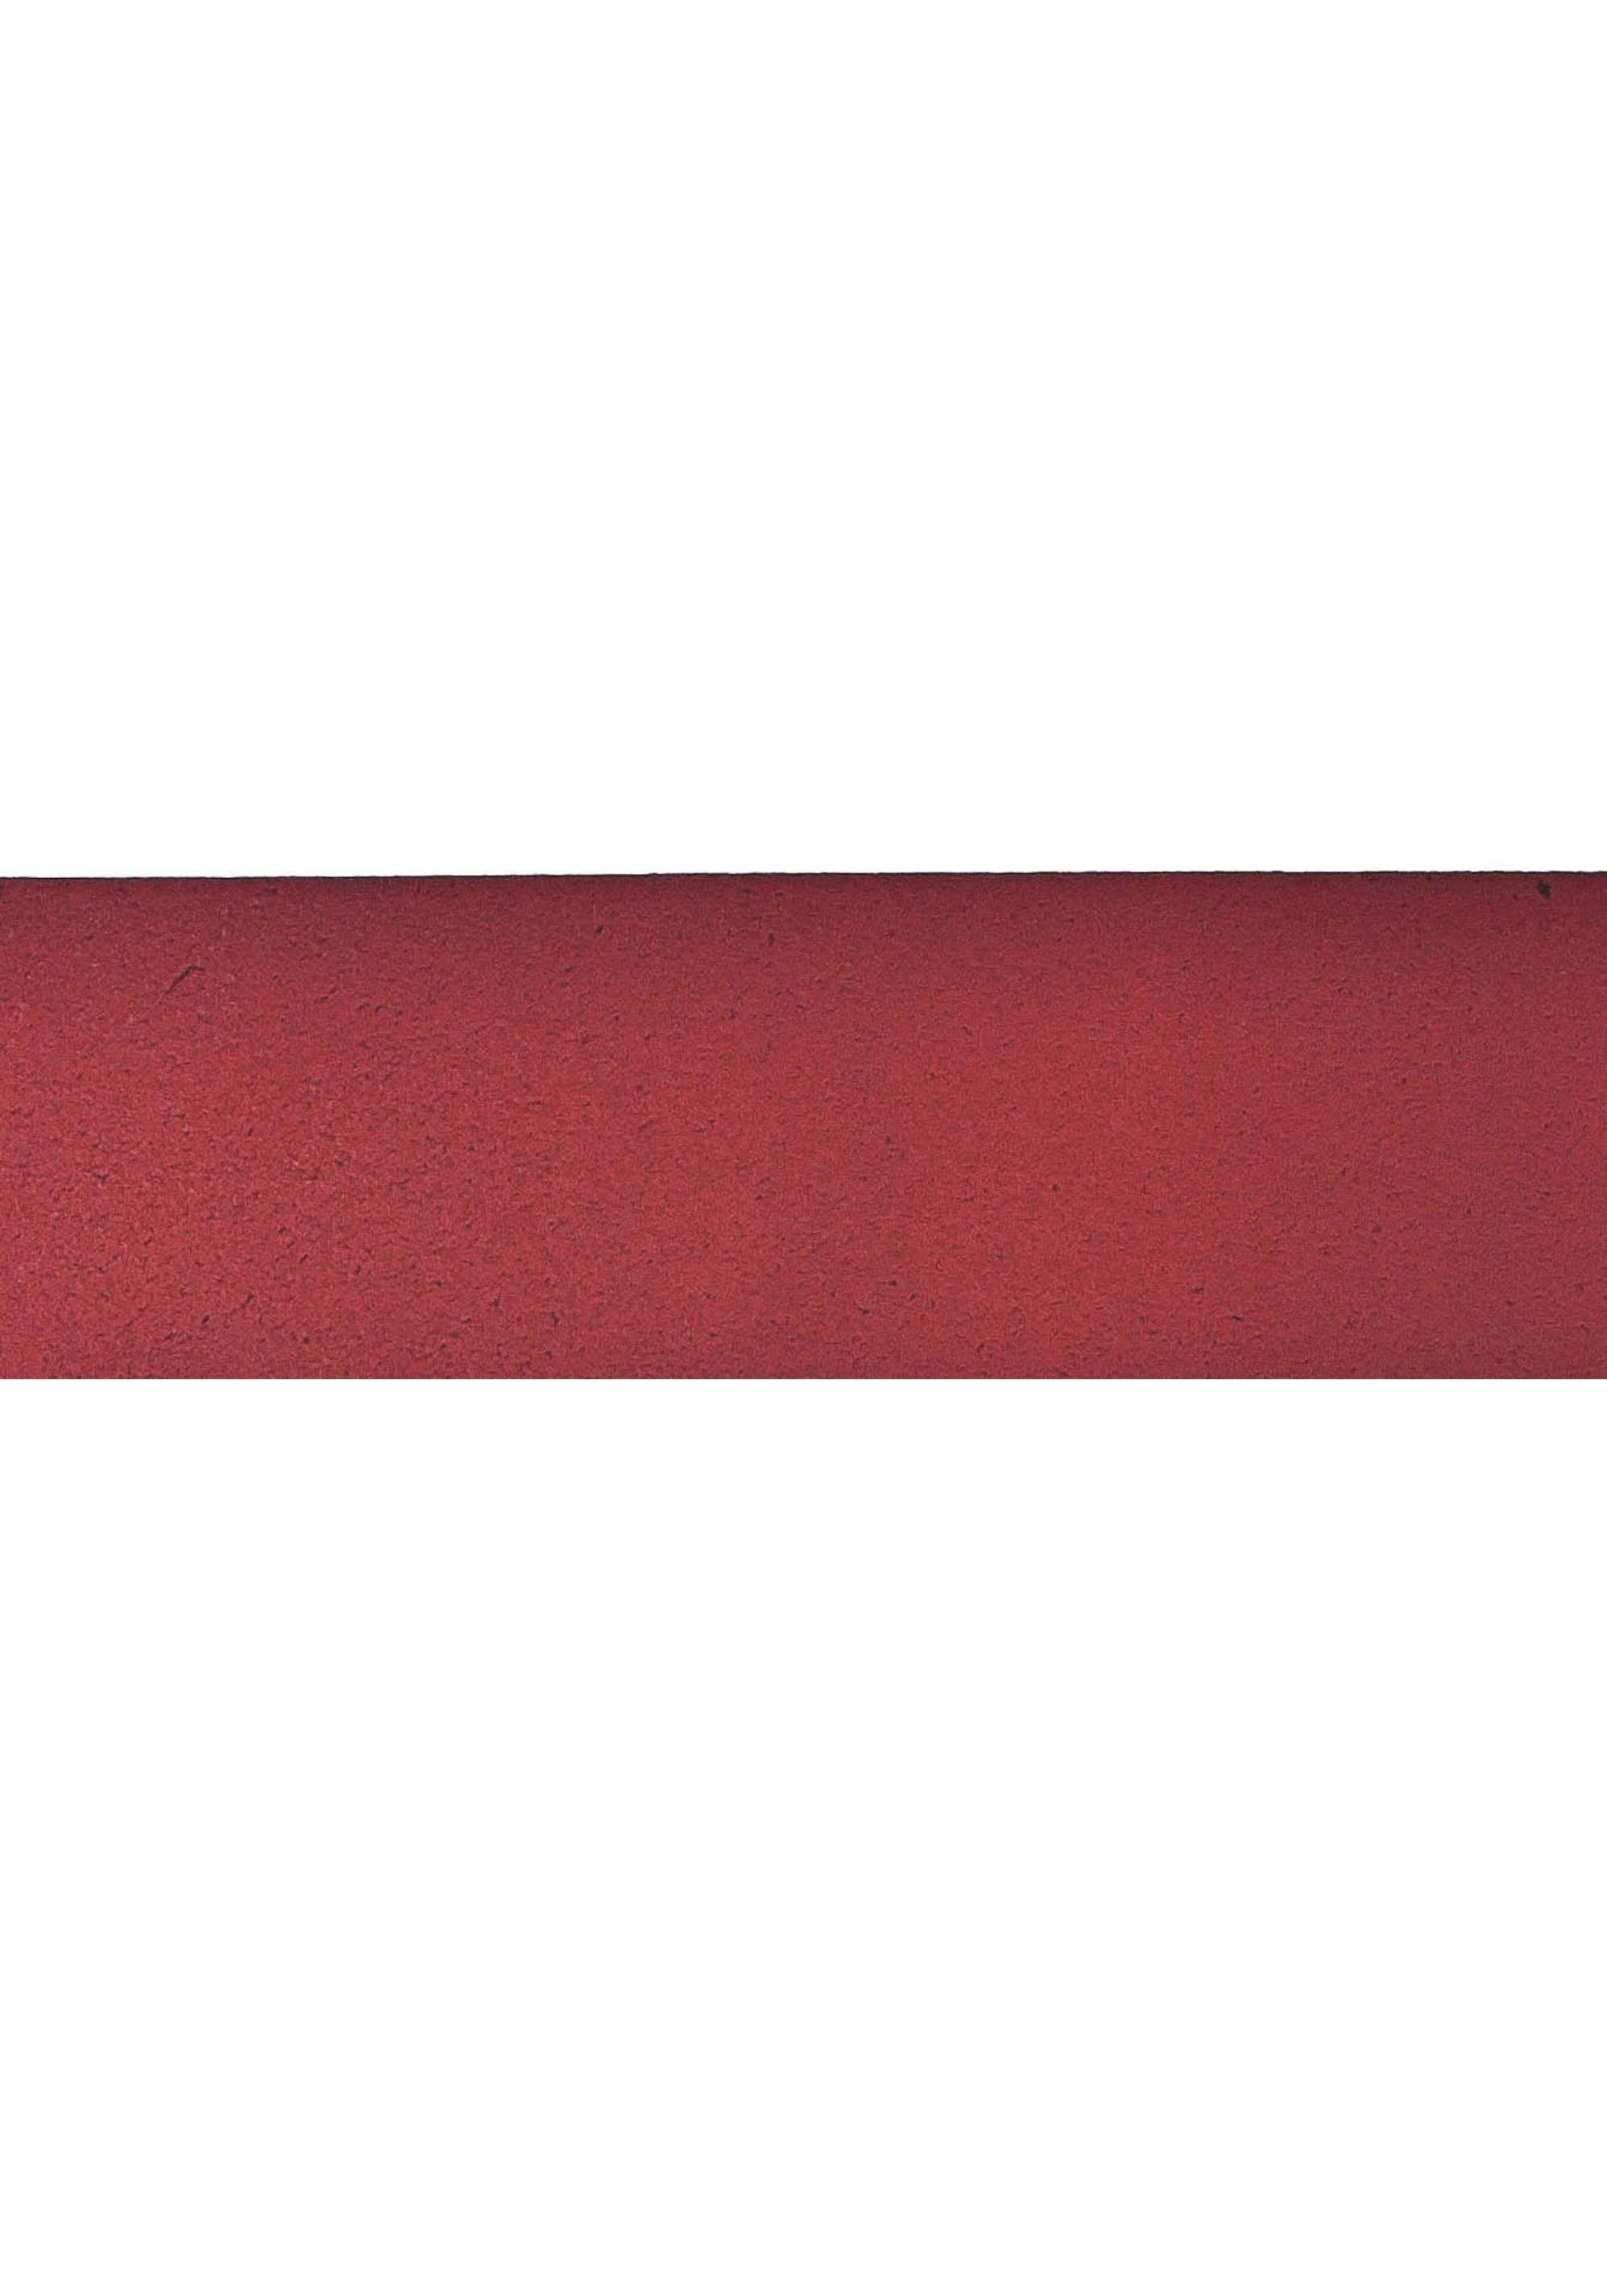 Gürtelschnalle rot Vanzetti Antik-Look Ledergürtel im